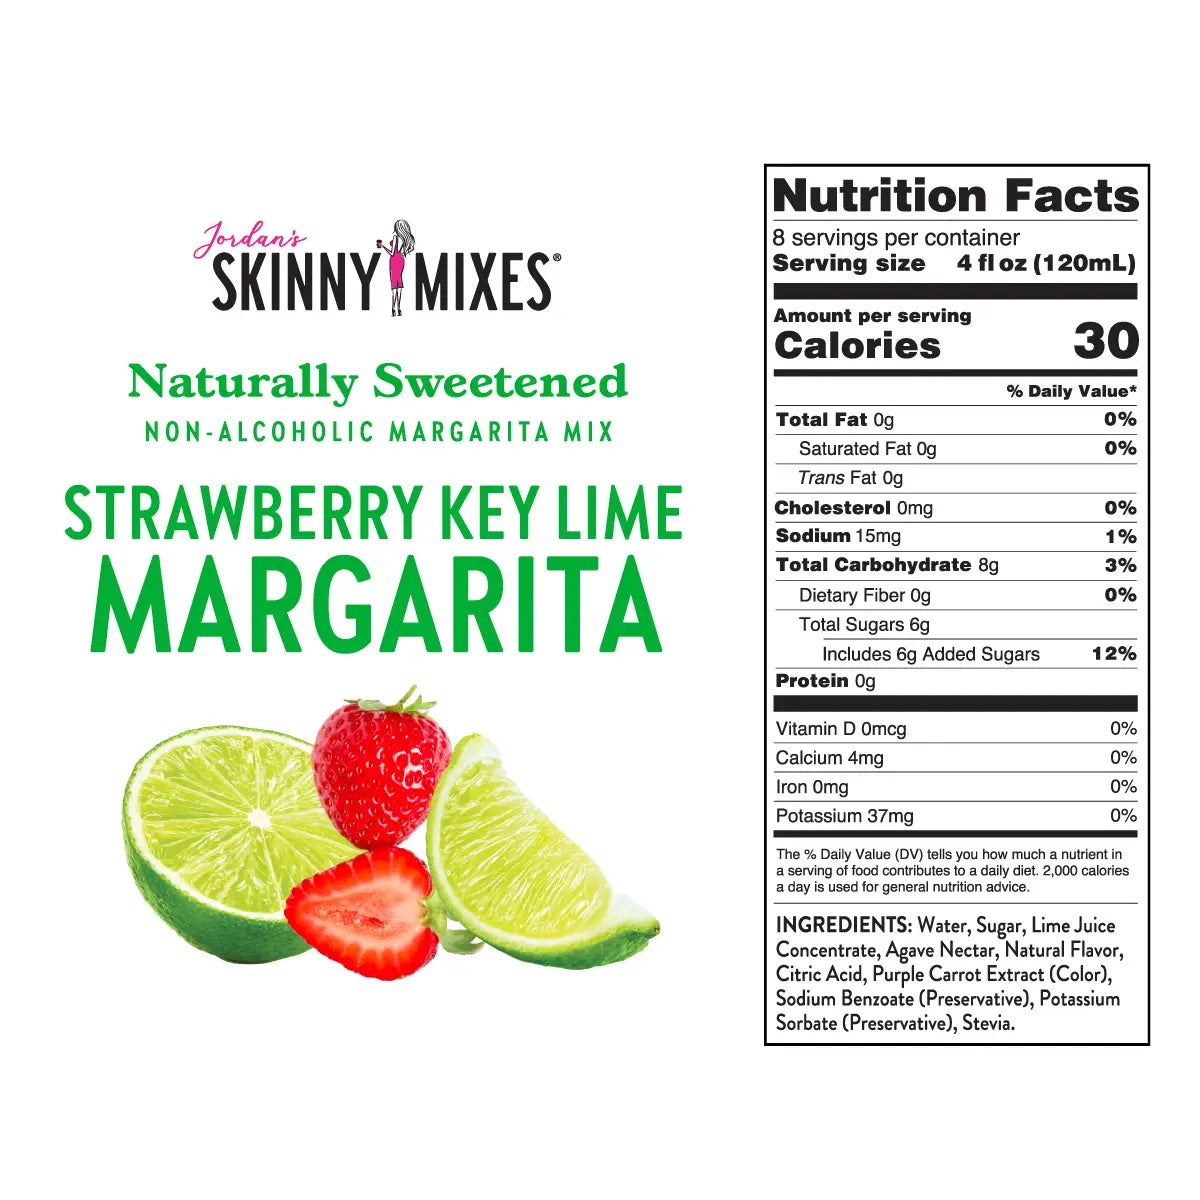 Skinny Margarita Mixers